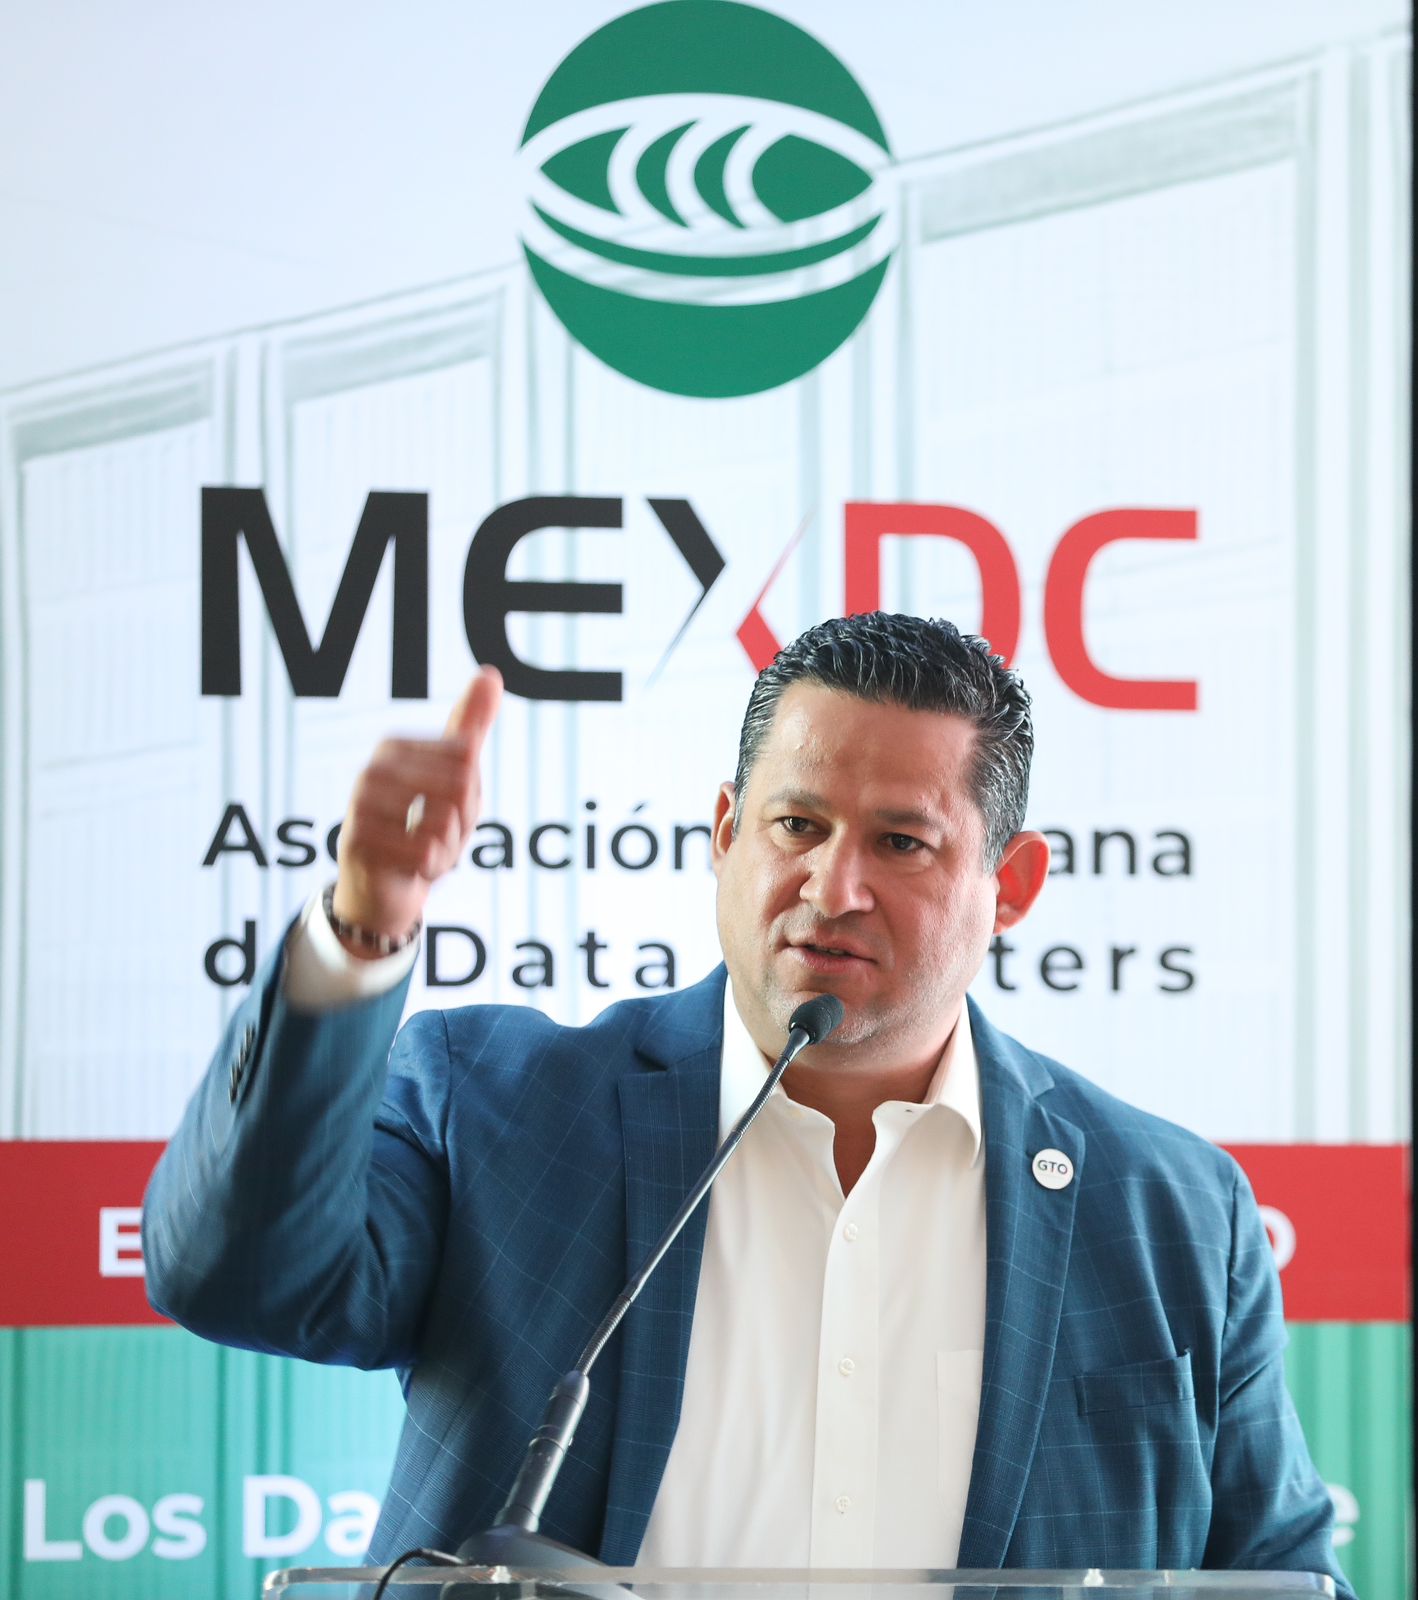 El Bajío será el centro logístico de los Data Centers de América Latina: Diego Sinhue Rodríguez